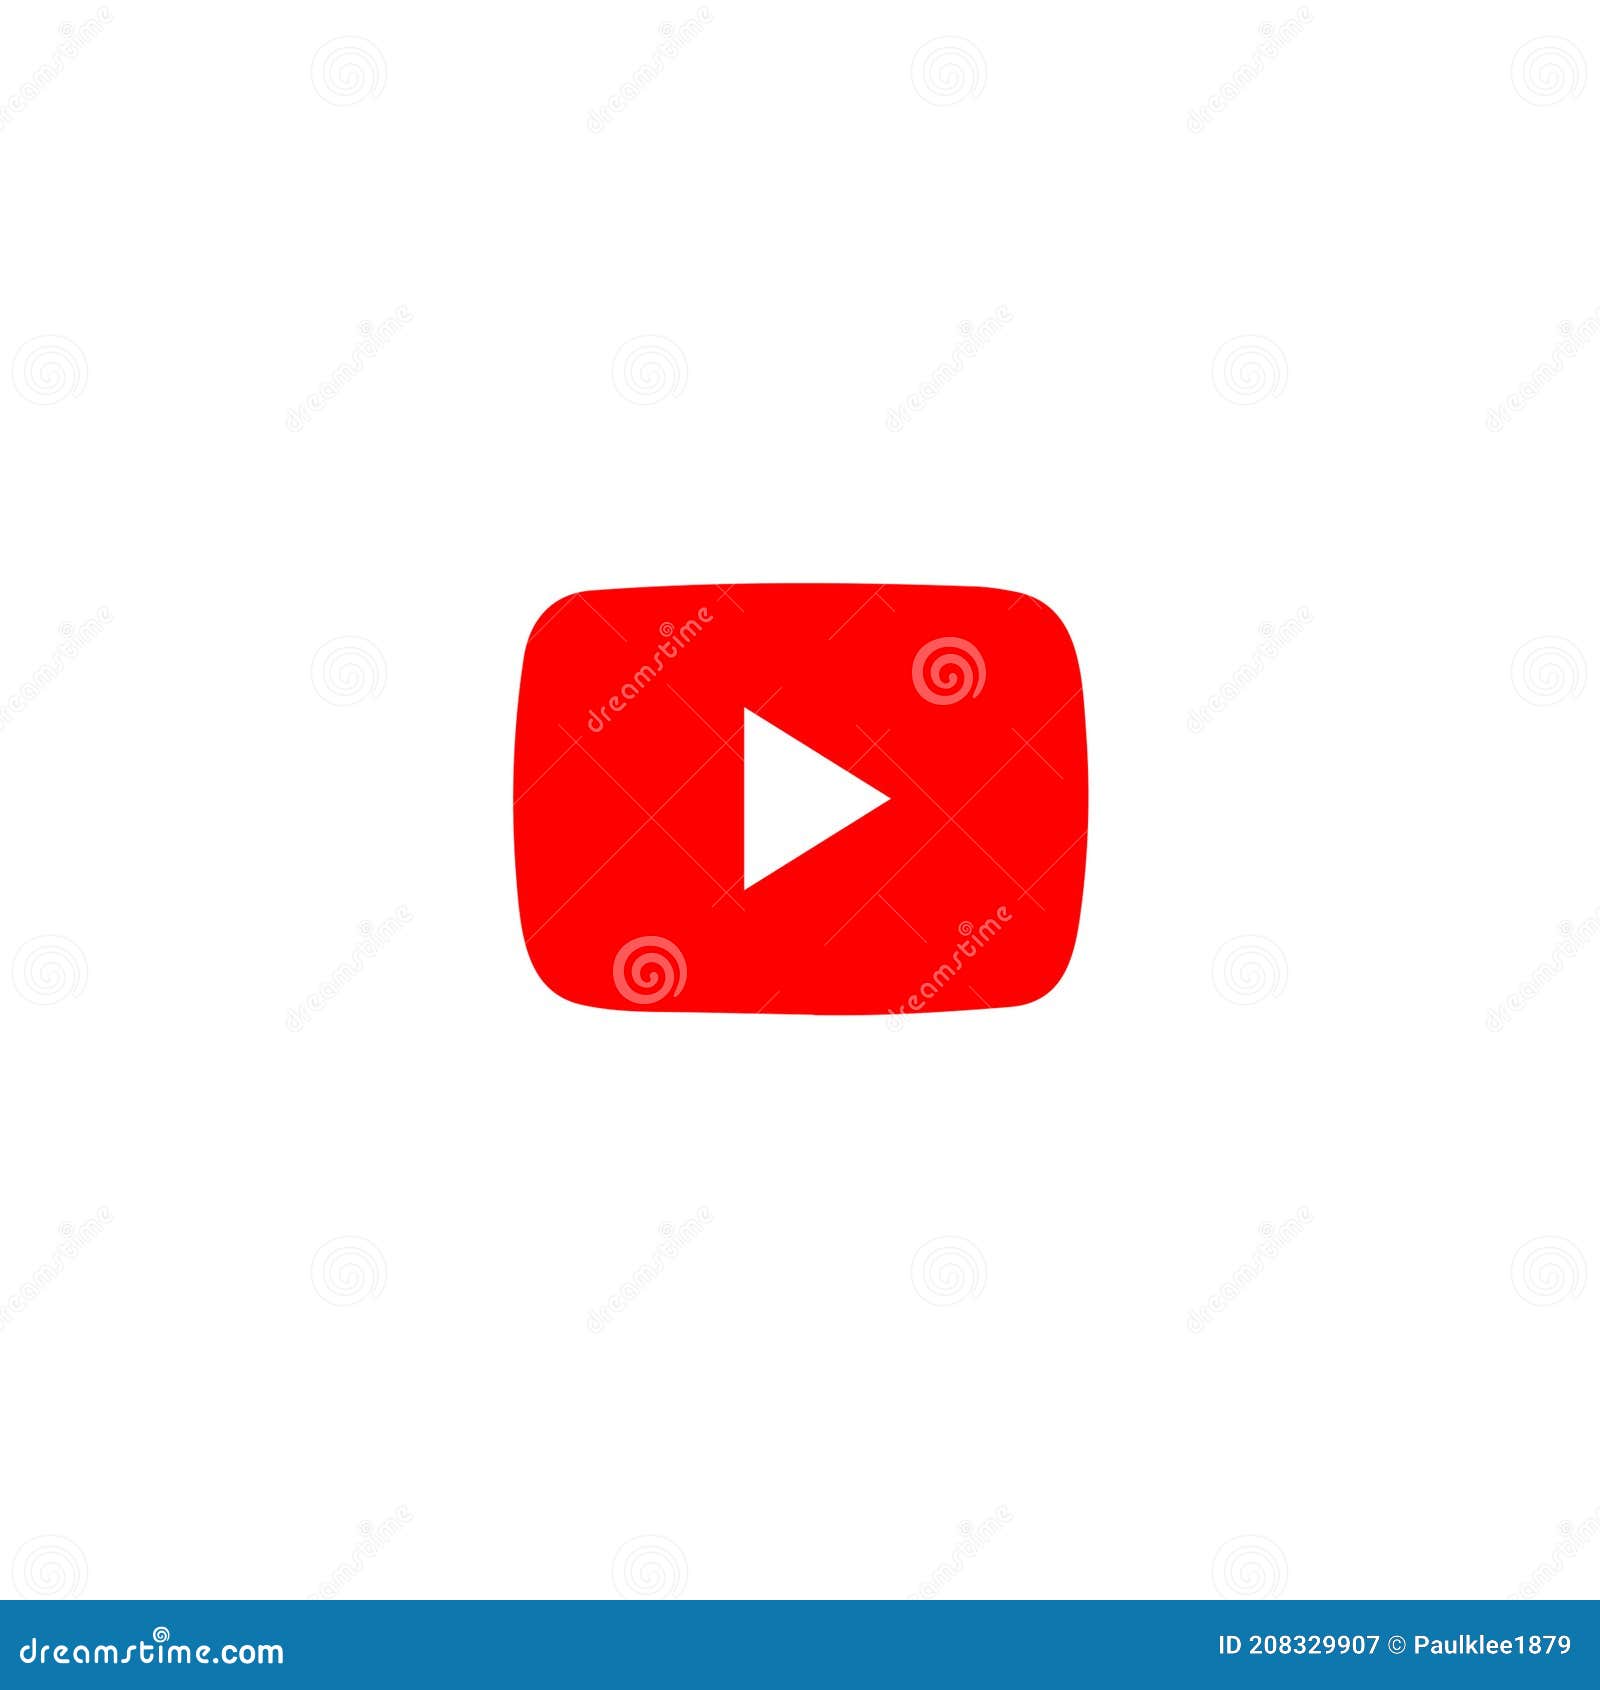 Logo của Youtube không chỉ là biểu tượng của một thương hiệu mà còn là niềm tự hào của mỗi nhà sáng lập và người dùng. Thông qua những hình ảnh liên quan, bạn sẽ được chiêm ngưỡng sự phát triển và thay đổi của logo Youtube qua từng giai đoạn. Hãy cùng nhìn lại hành trình đầy cảm xúc của logo nổi tiếng này.